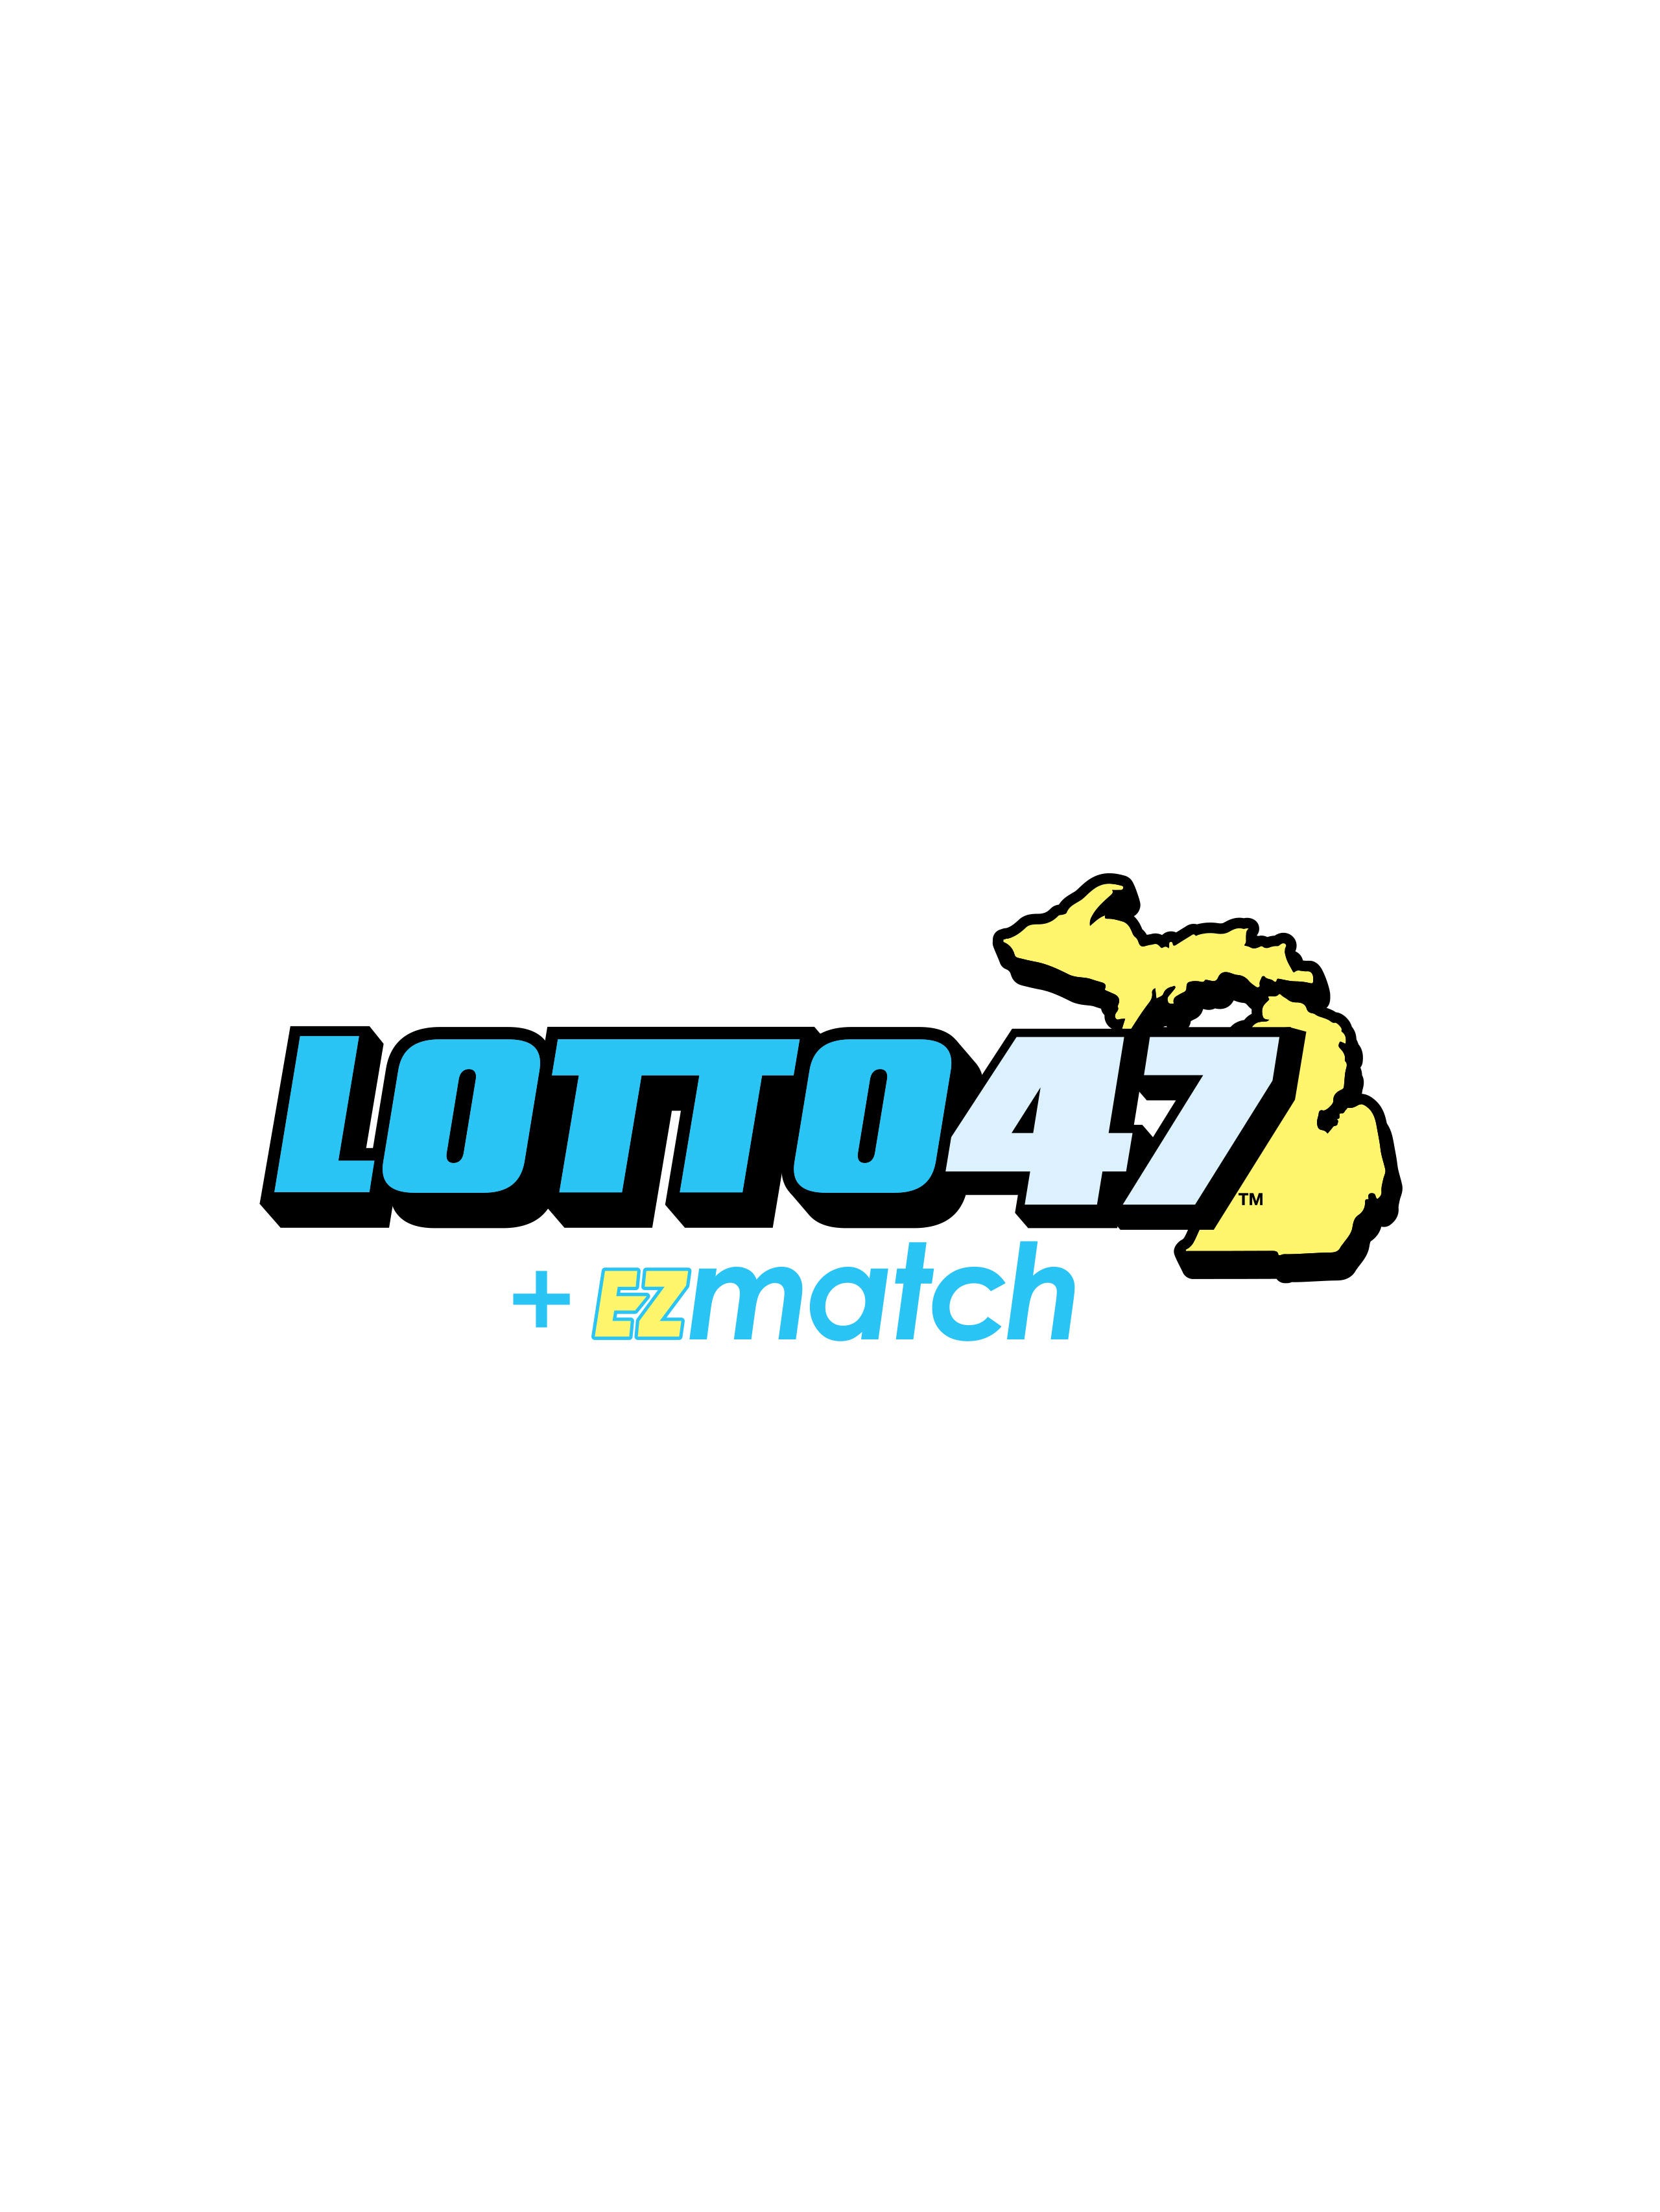 winning lotto 47